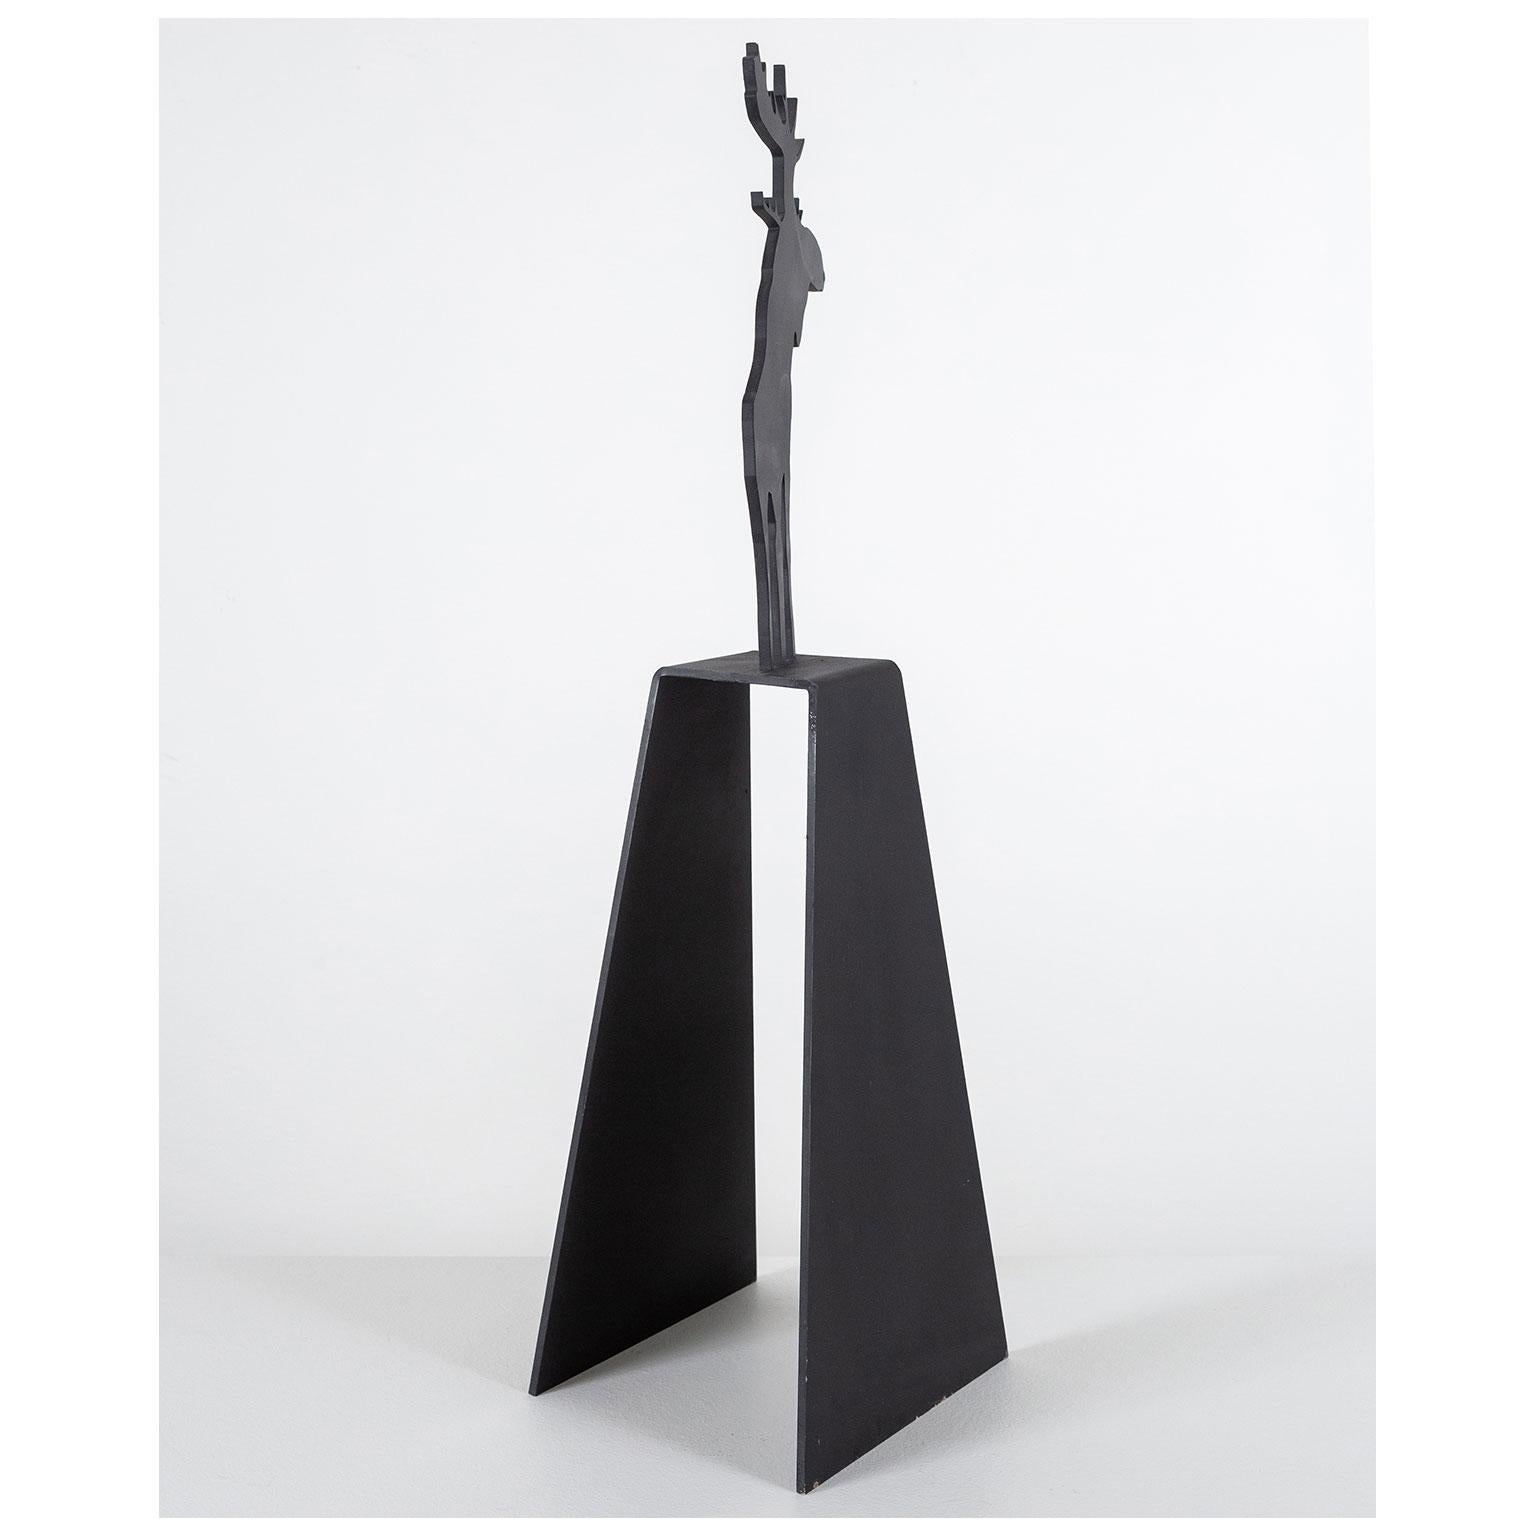 Mooseamour – Sculpture von Charles Pachter